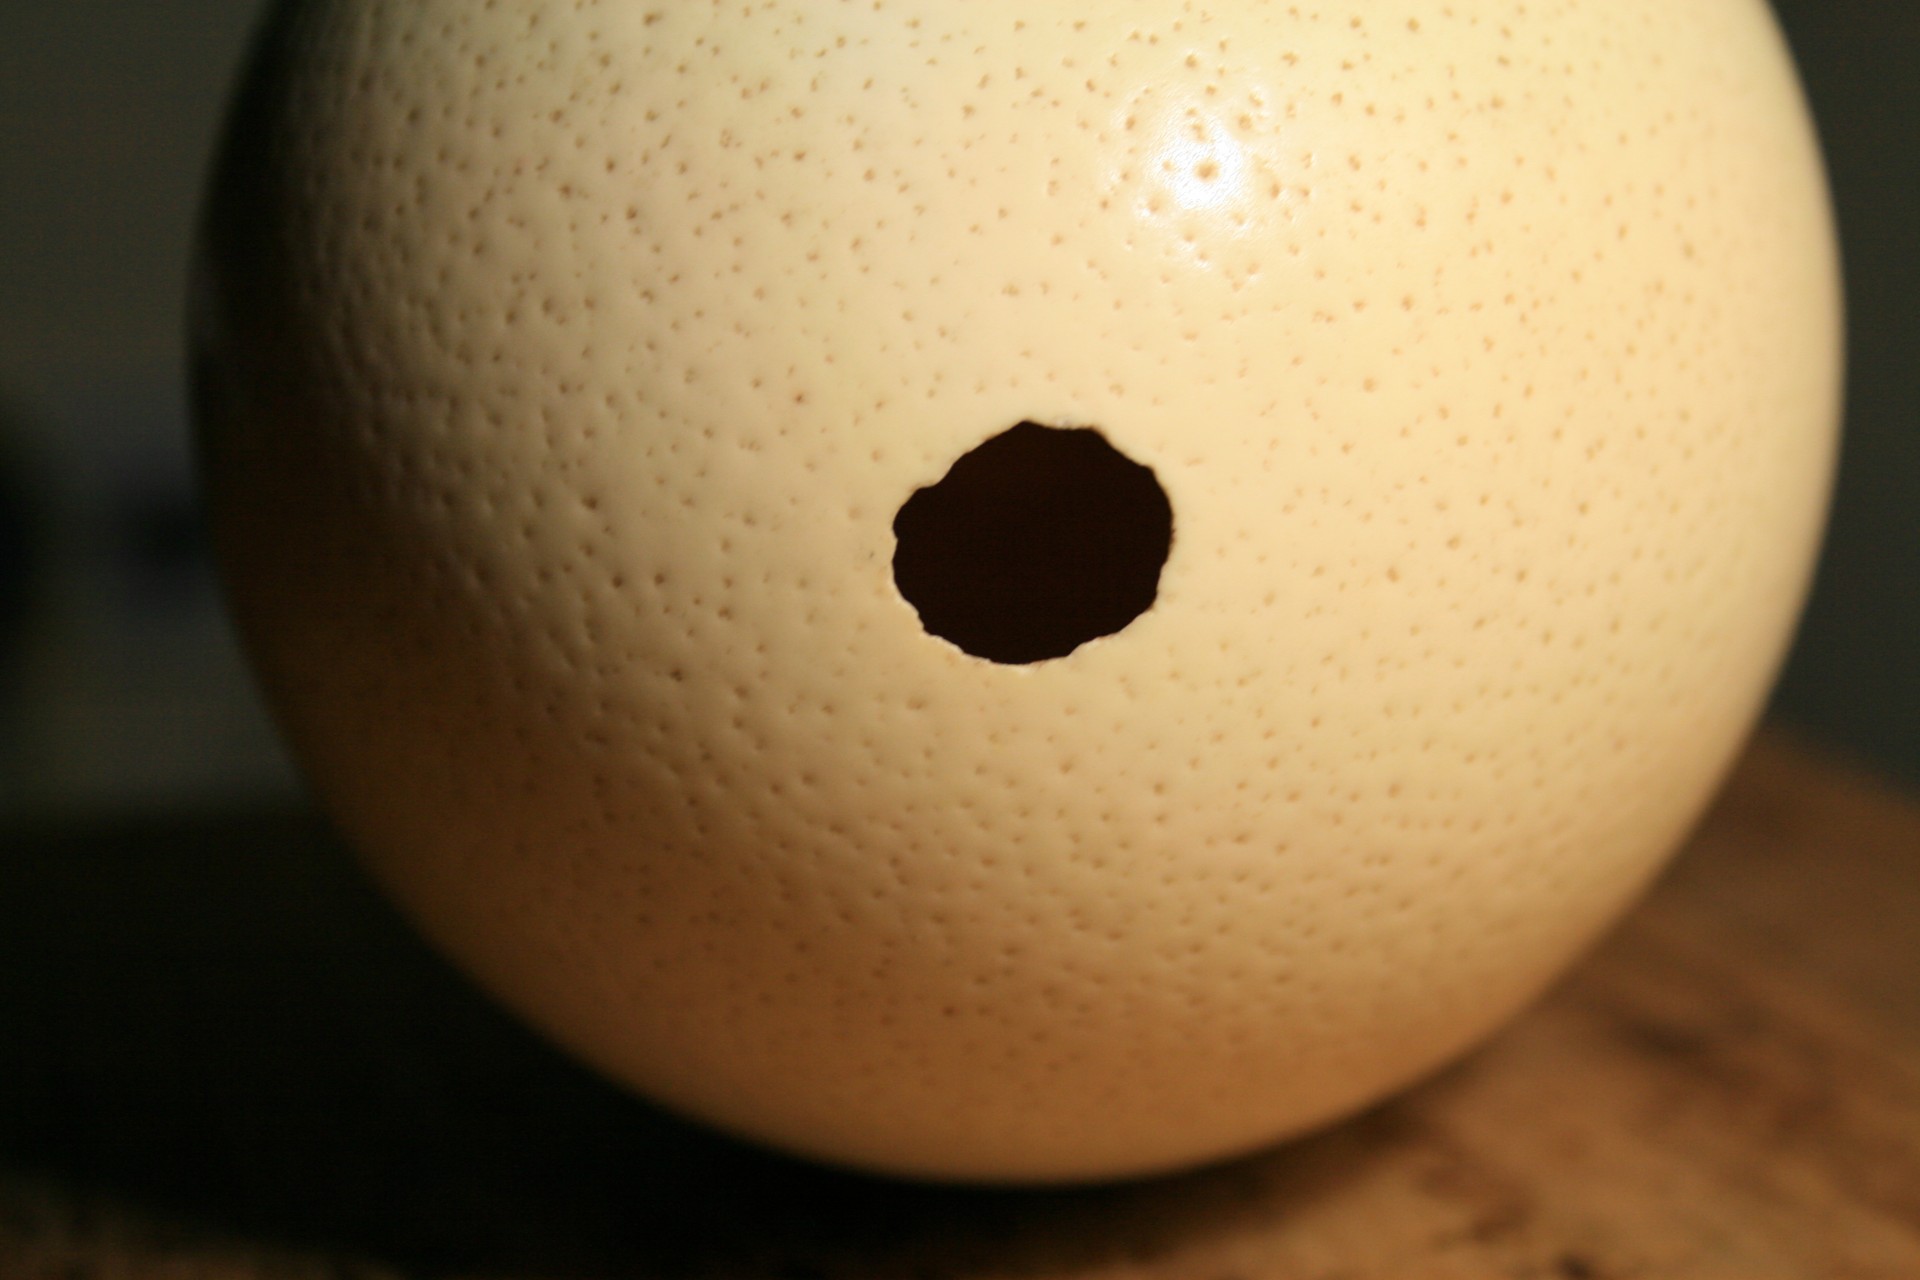 Ostrich Egg Shell